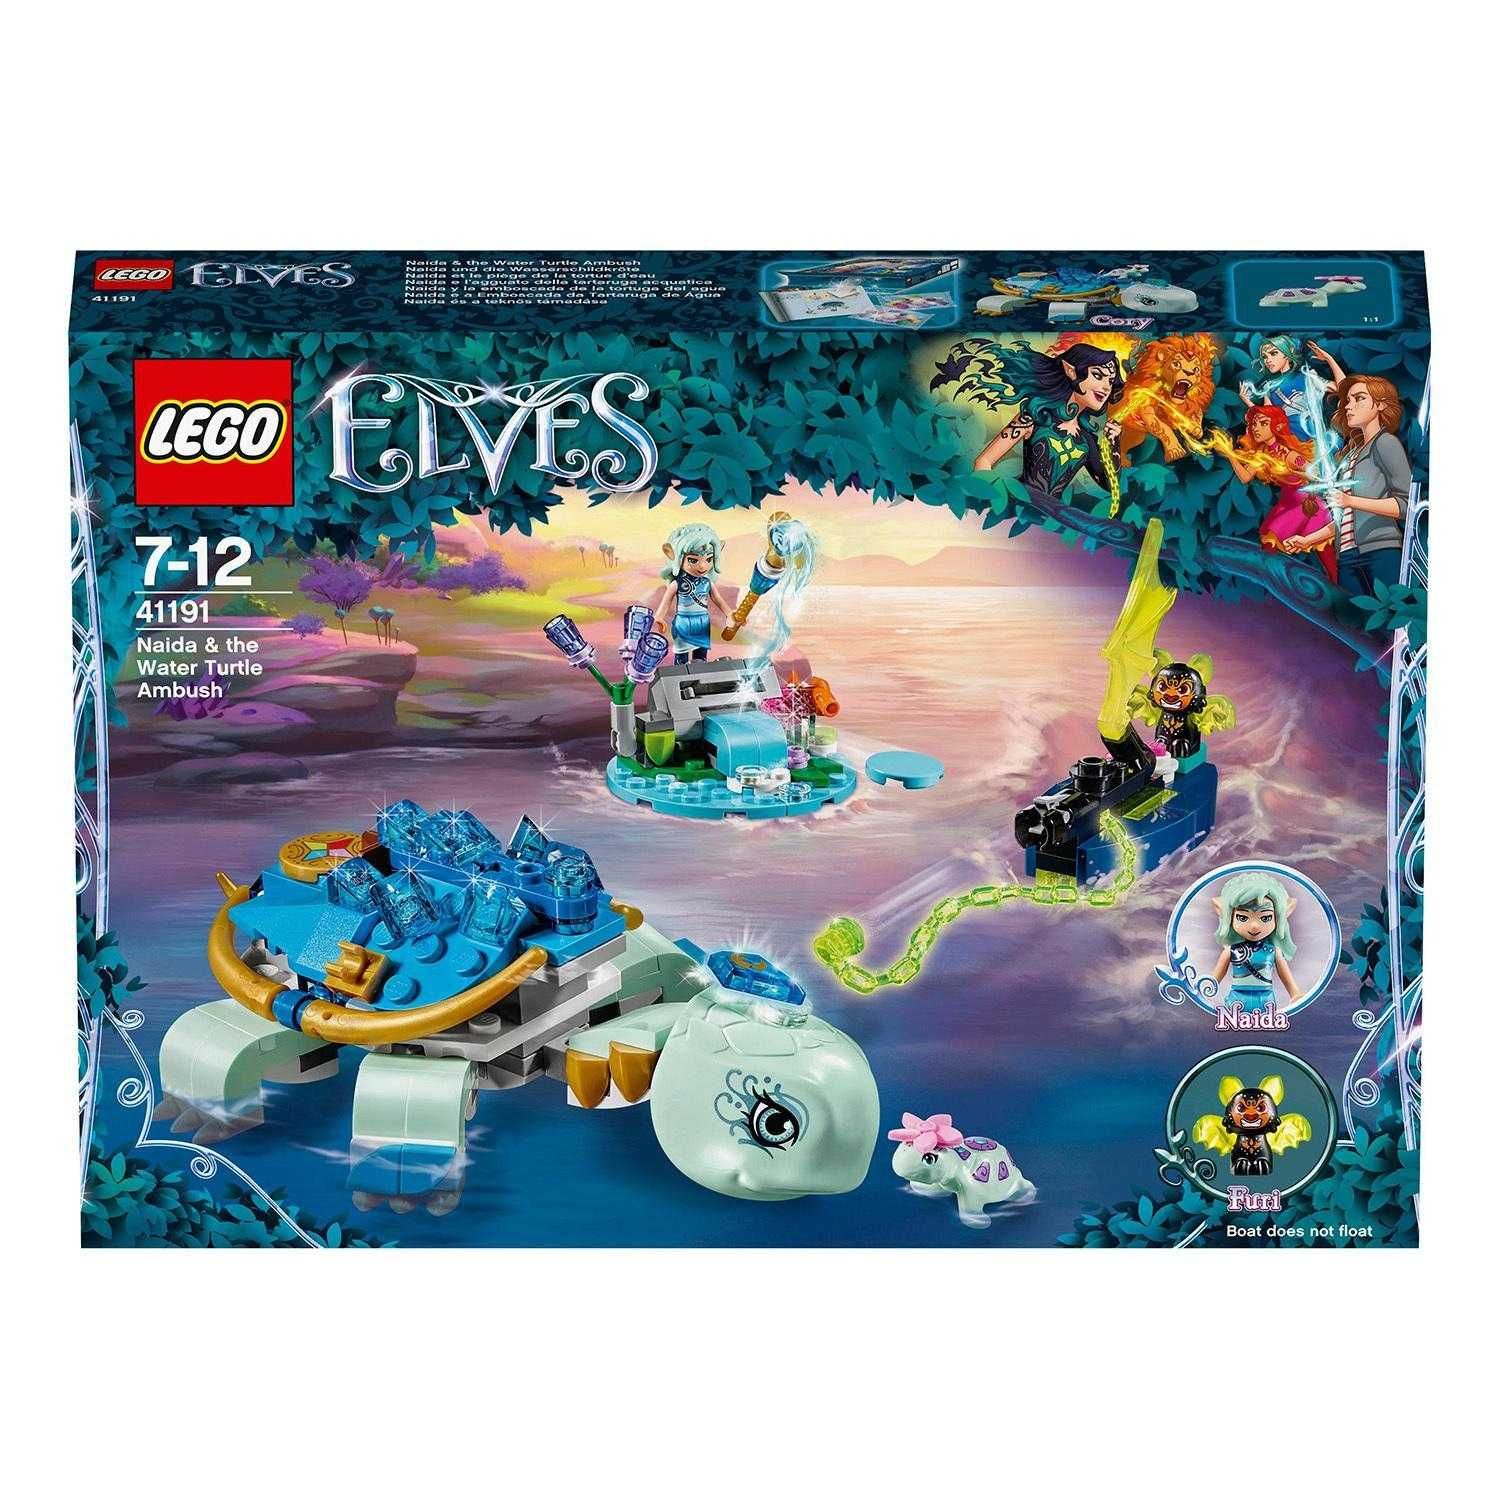 LEGO Elves Засада Наиды и водяной черепахи 41191 конструктор